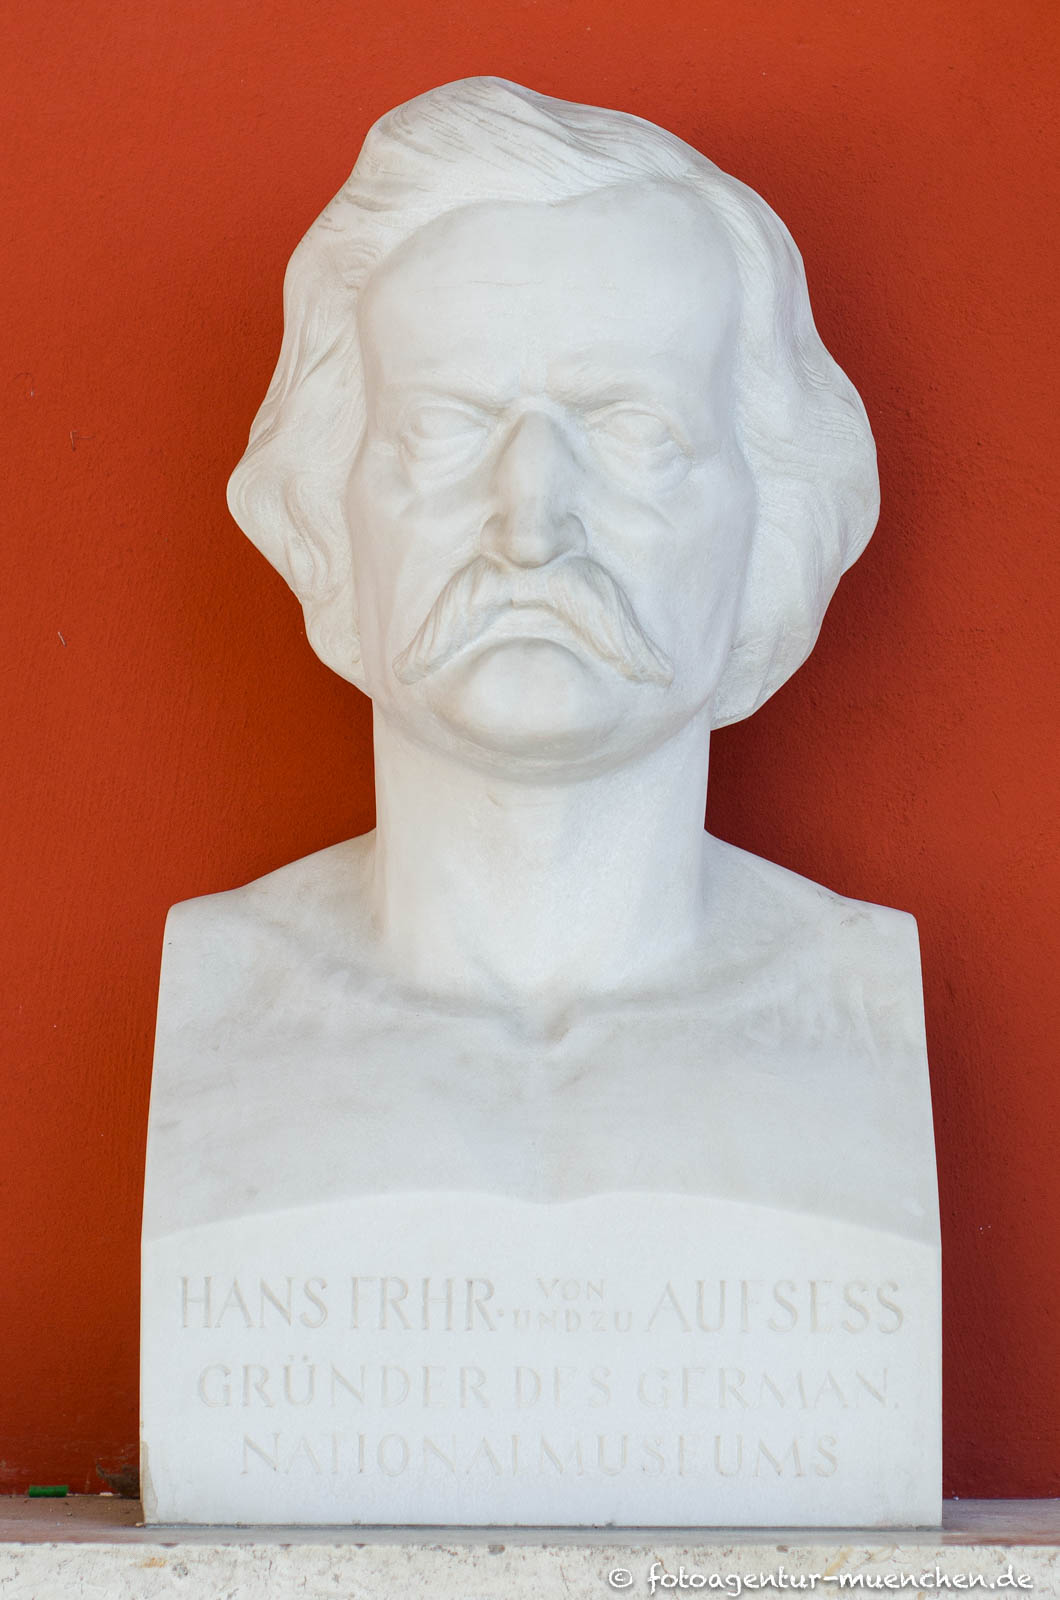 Hans Freiherr von und zu Aufsess